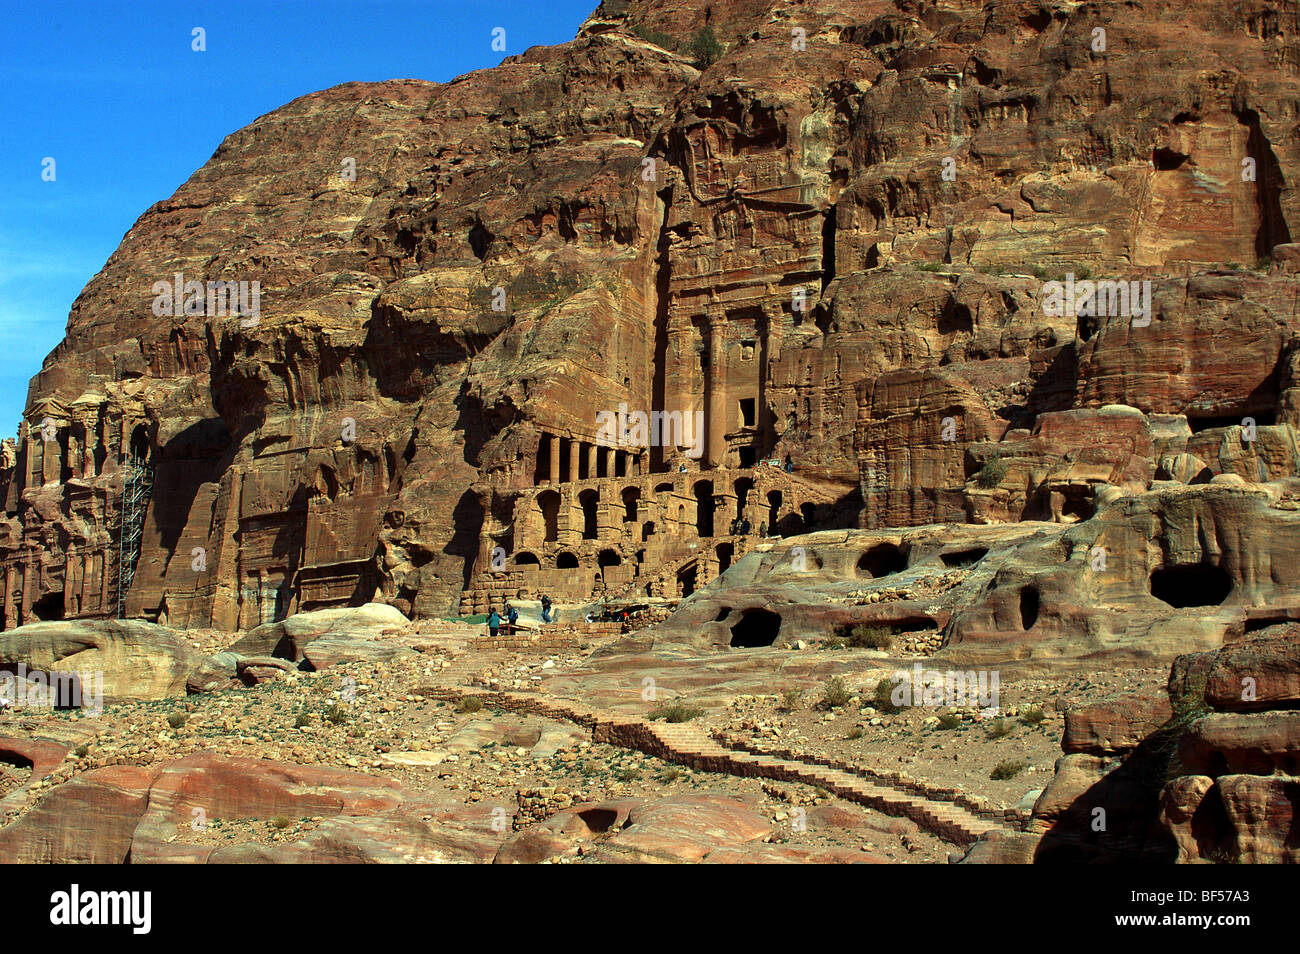 The Urn tomb, Petra, Southern Jordan Stock Photo